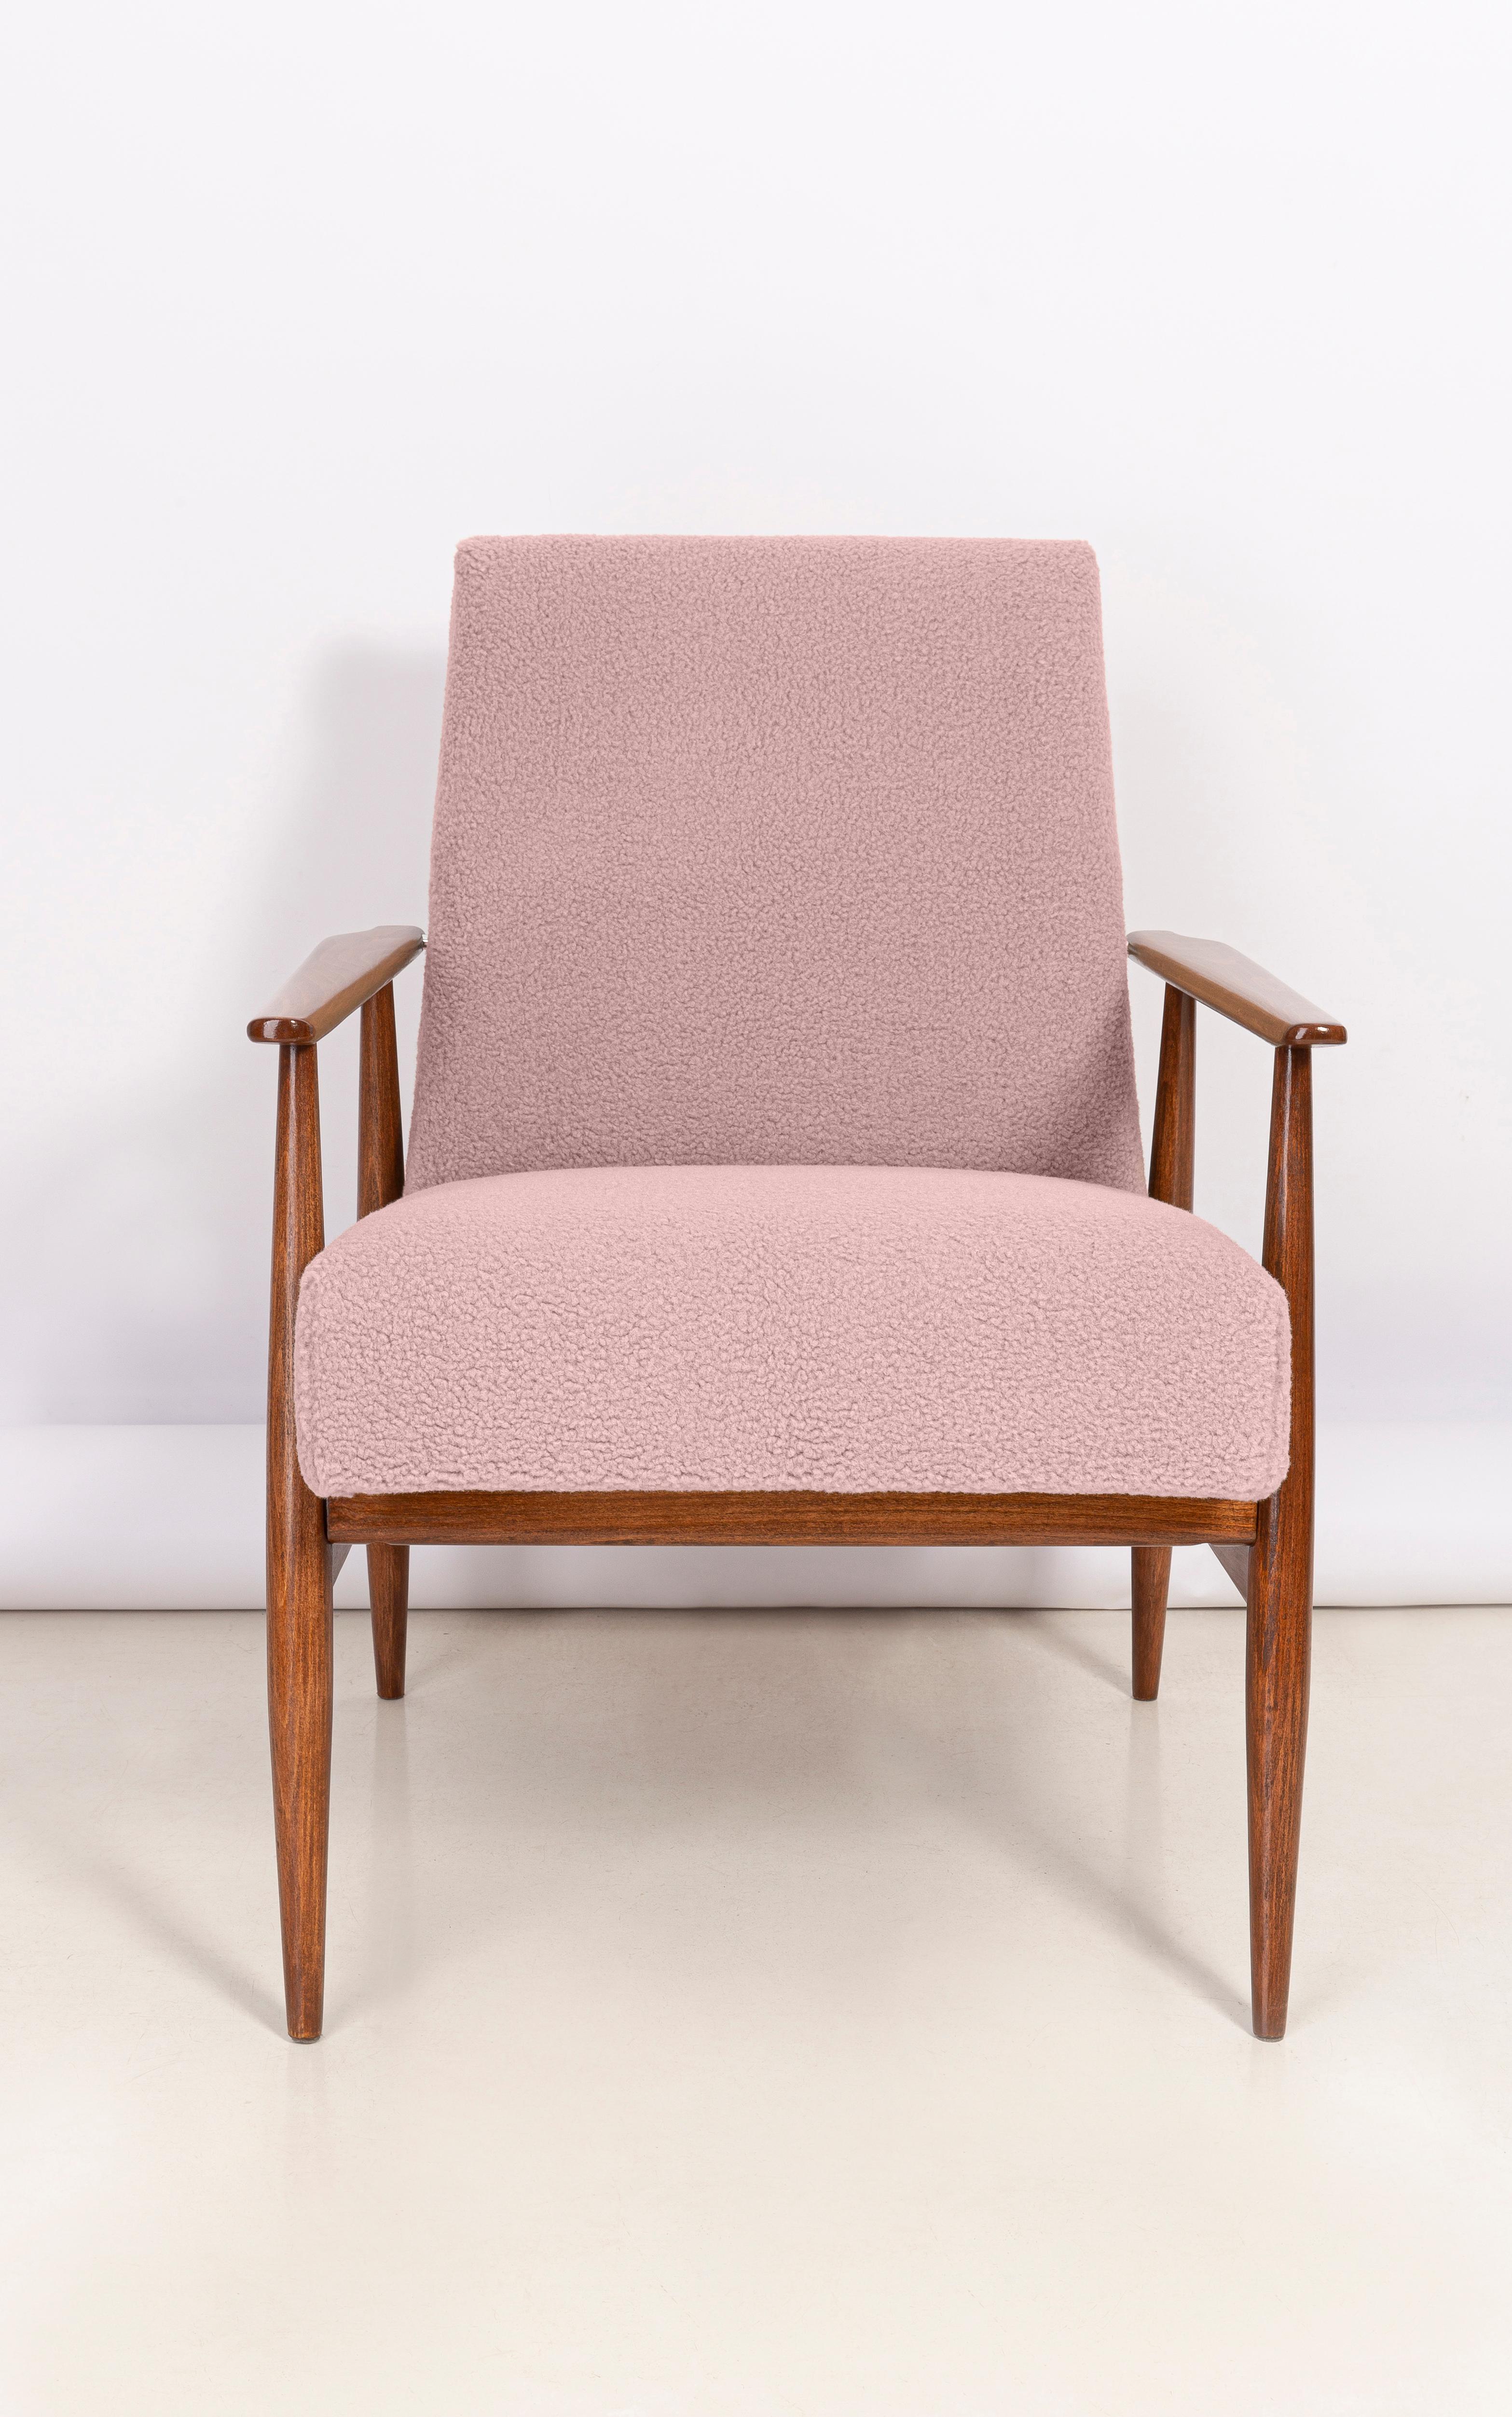 Bouclé-Sessel Dusty Pink, entworfen von Henryk Lis. Möbel nach kompletter Renovierung durch Schreiner und Polsterei. Der Sessel passt perfekt in minimalistische Räume, sowohl privat als auch öffentlich. 

Kunstpelz hat eine Struktur, die an ein